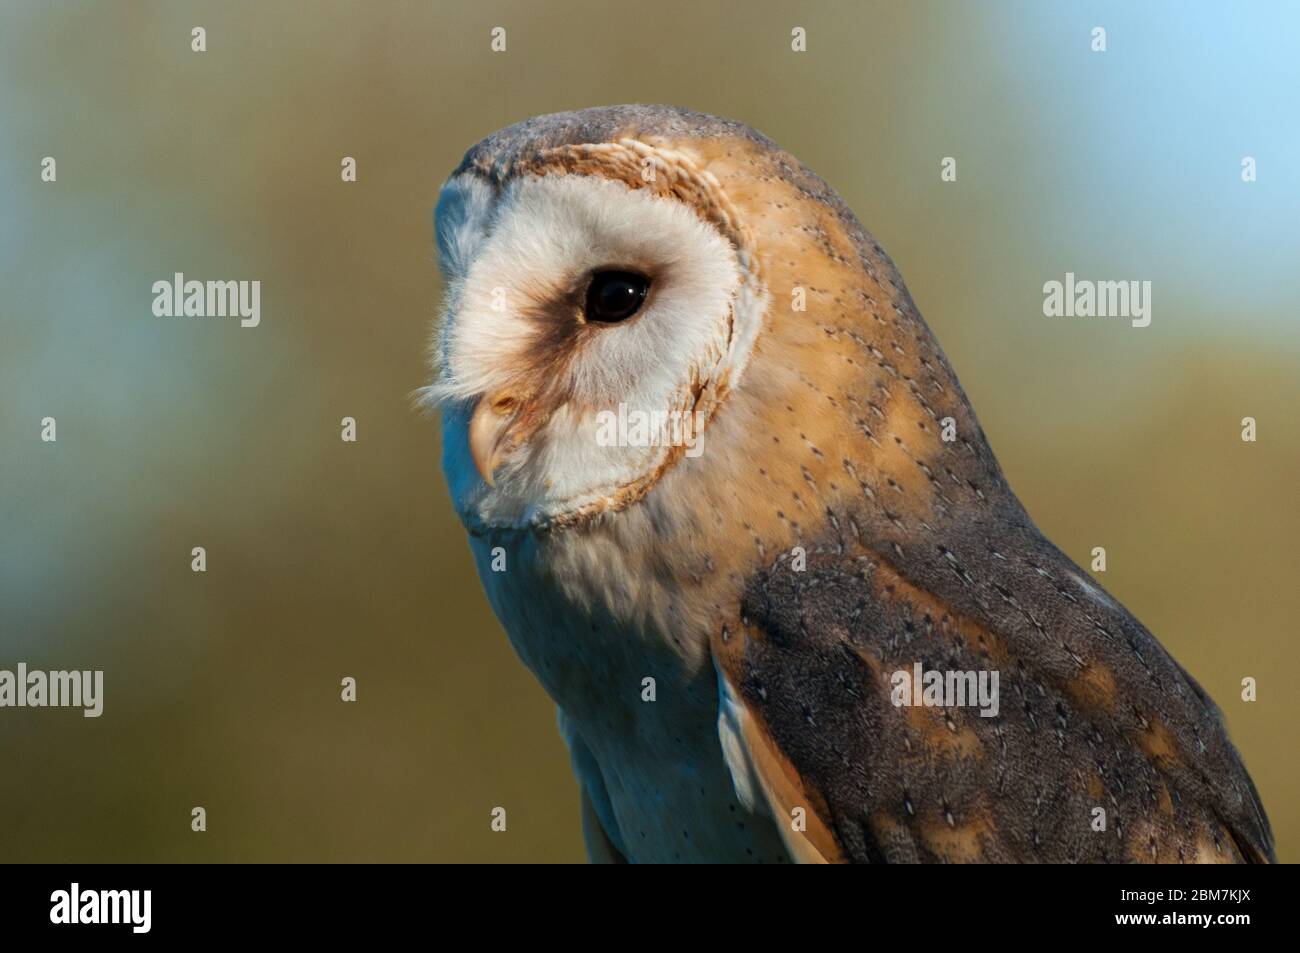 A barn owl looks ahead Stock Photo